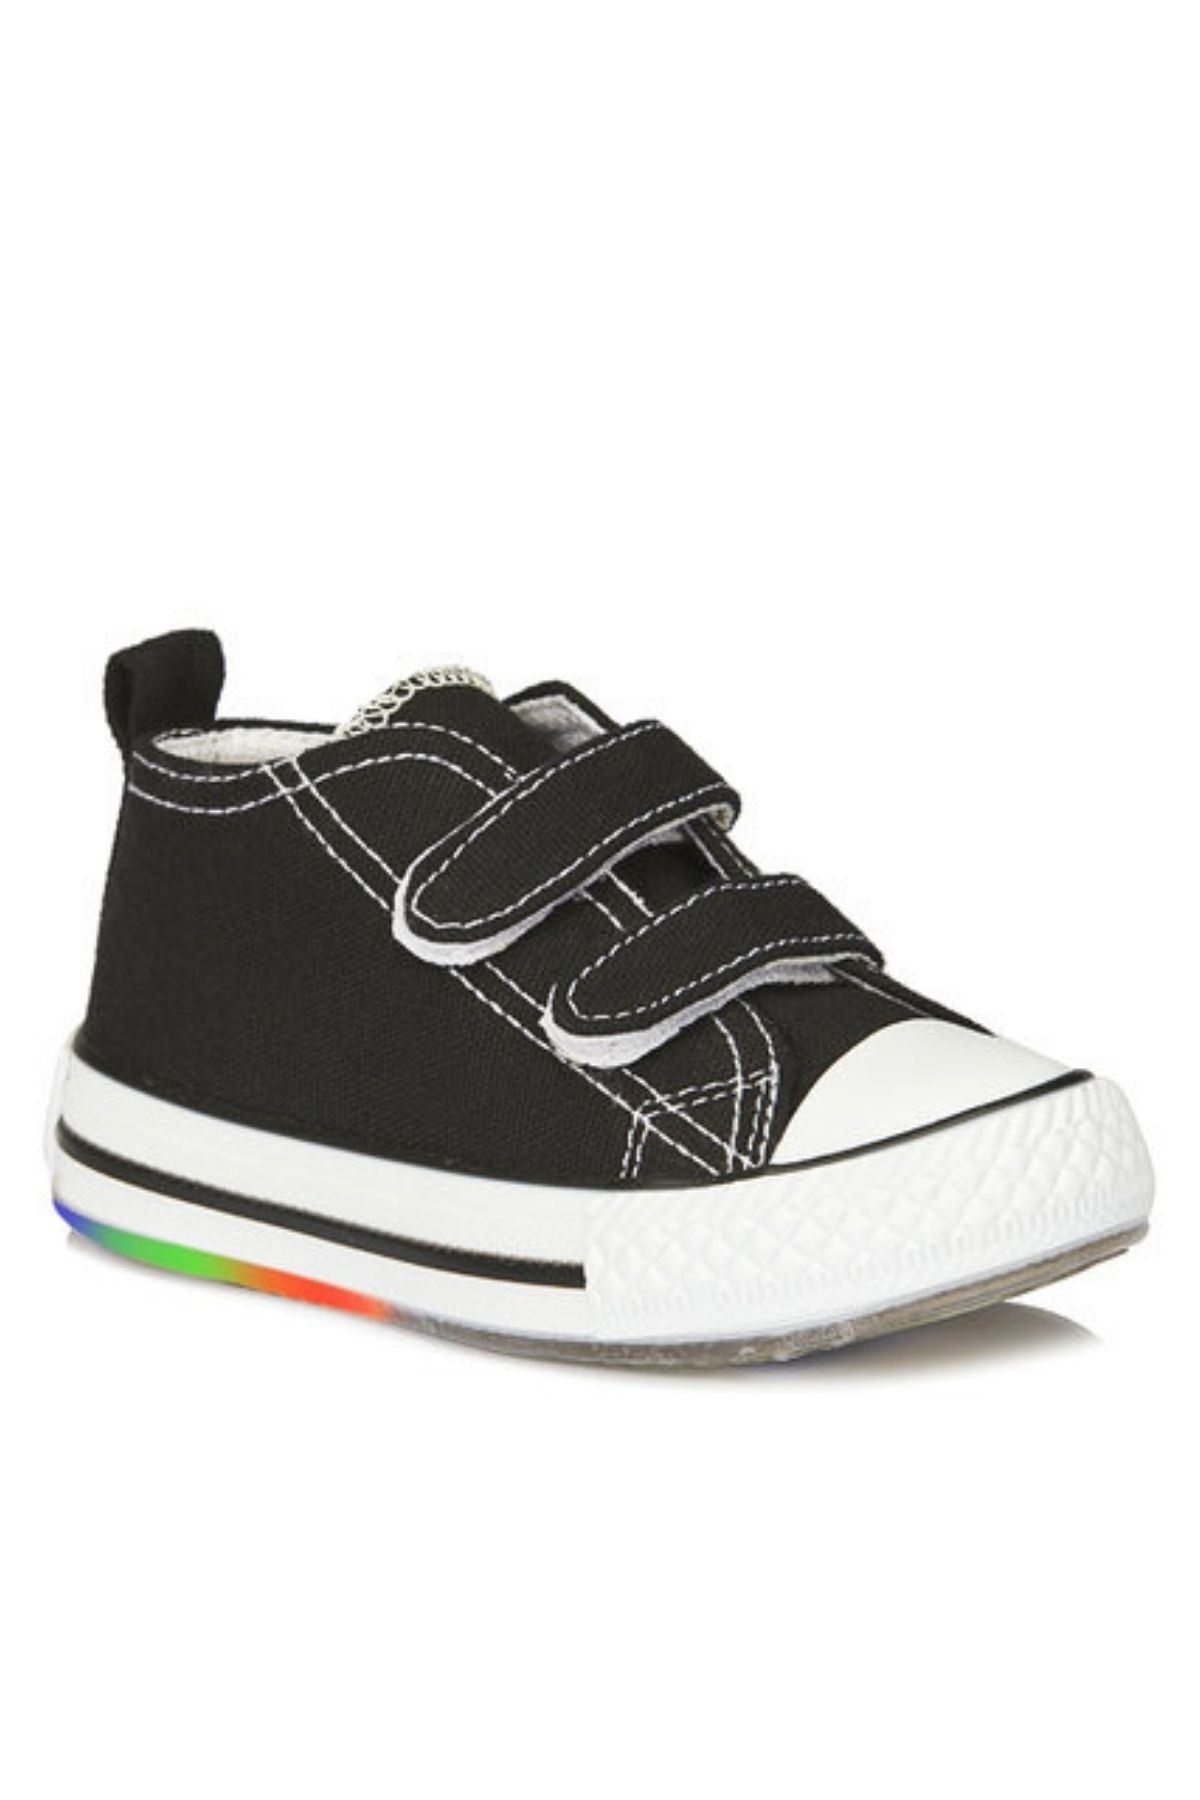 Vicco Pino Kız / Erkek Çocuk Işıklı Siyah Beyaz Sneaker Bebe Patik Spor Ayakkabı 925.p20y.150 Jojo